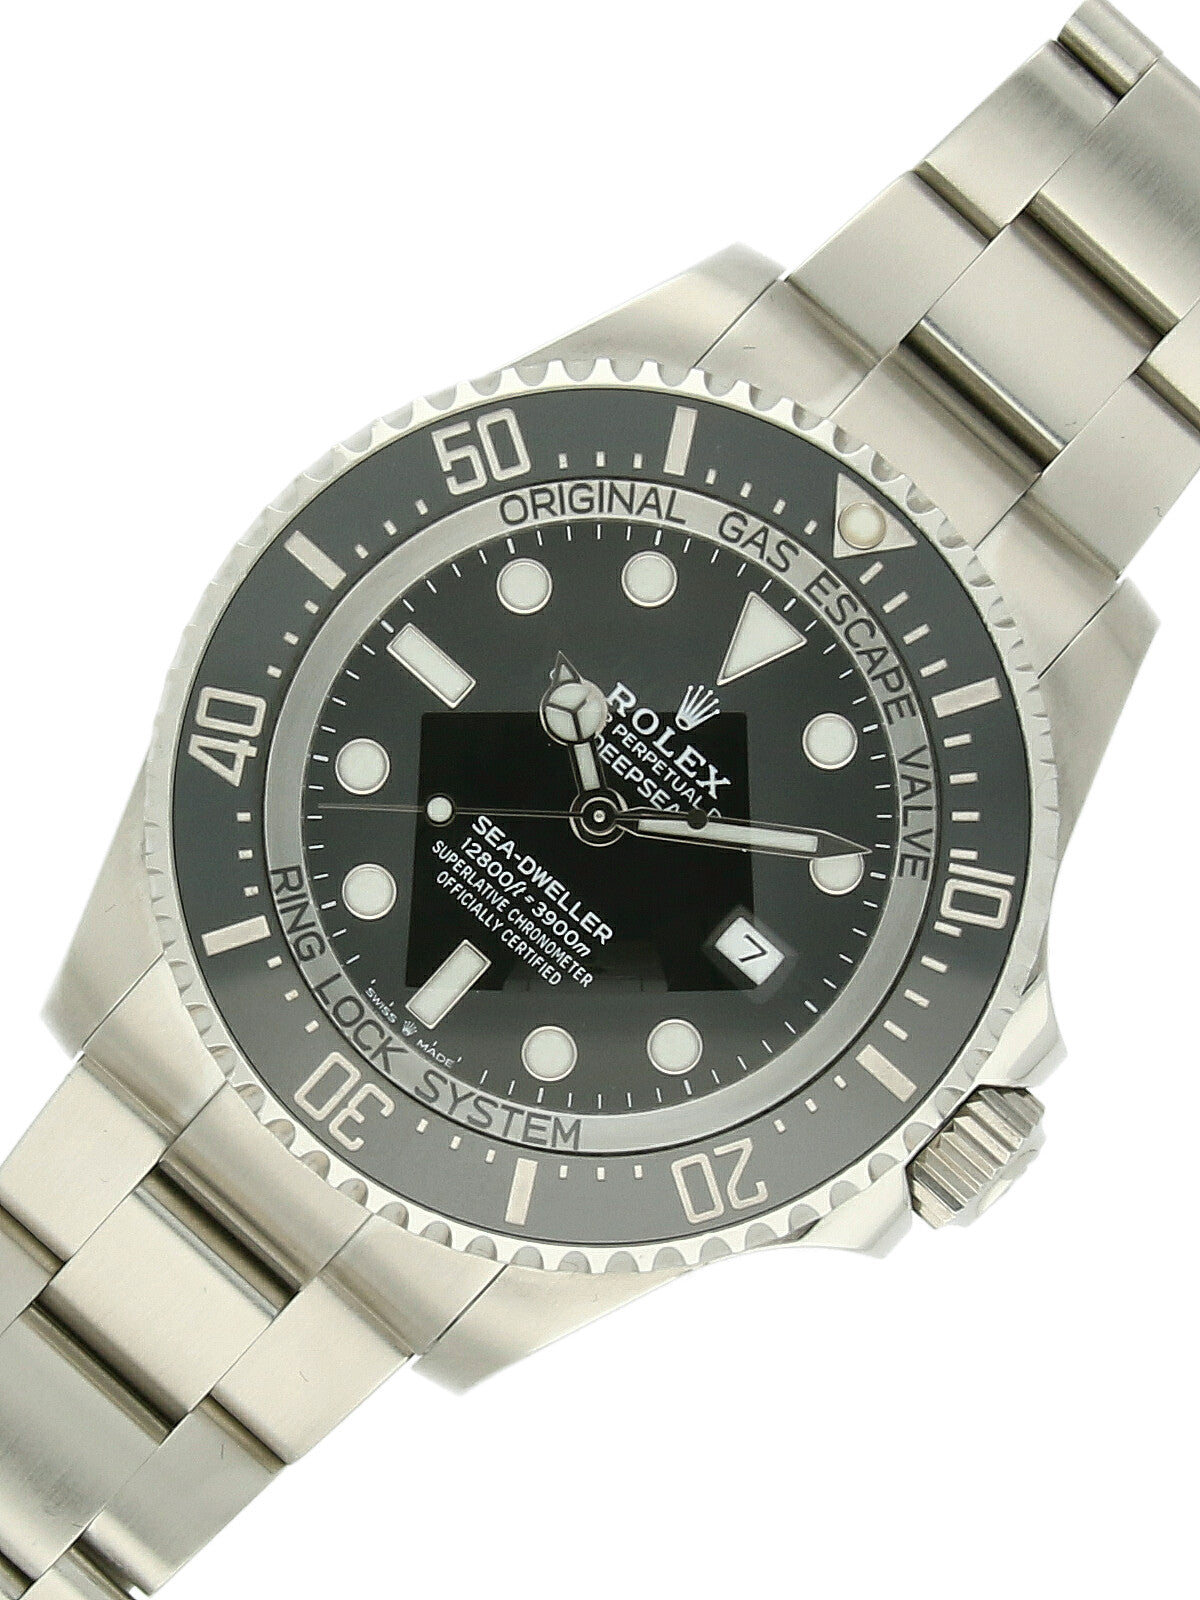 Pre Owned Rolex Sea-Dweller Deepsea Steel Automatic 44mm Watch on Oyster Bracelet